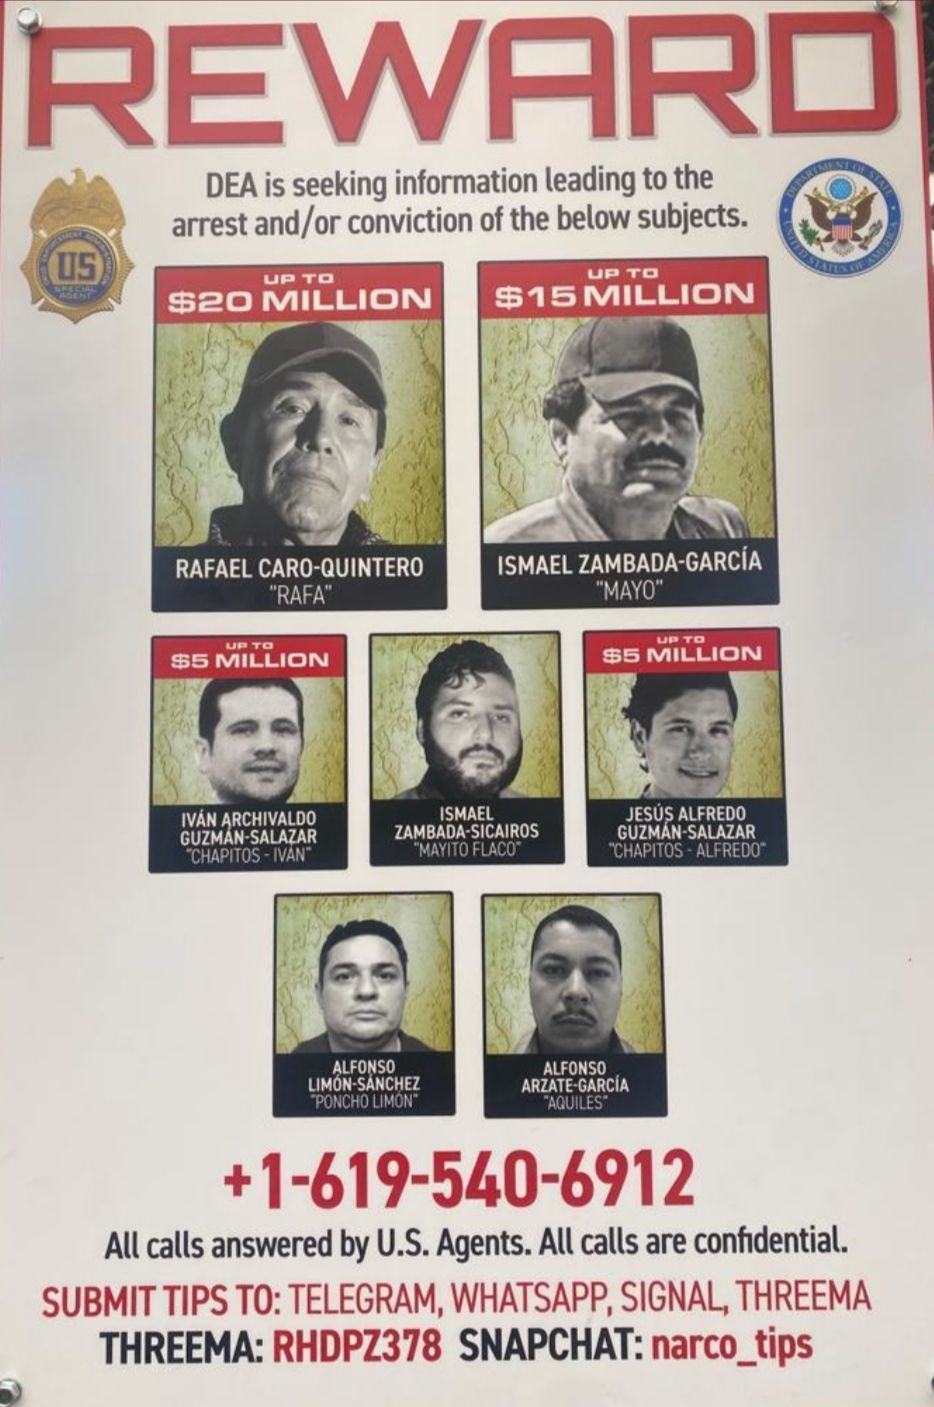 DEA ofrece millonarias recompensas por miembros del Cártel de Sinaloa